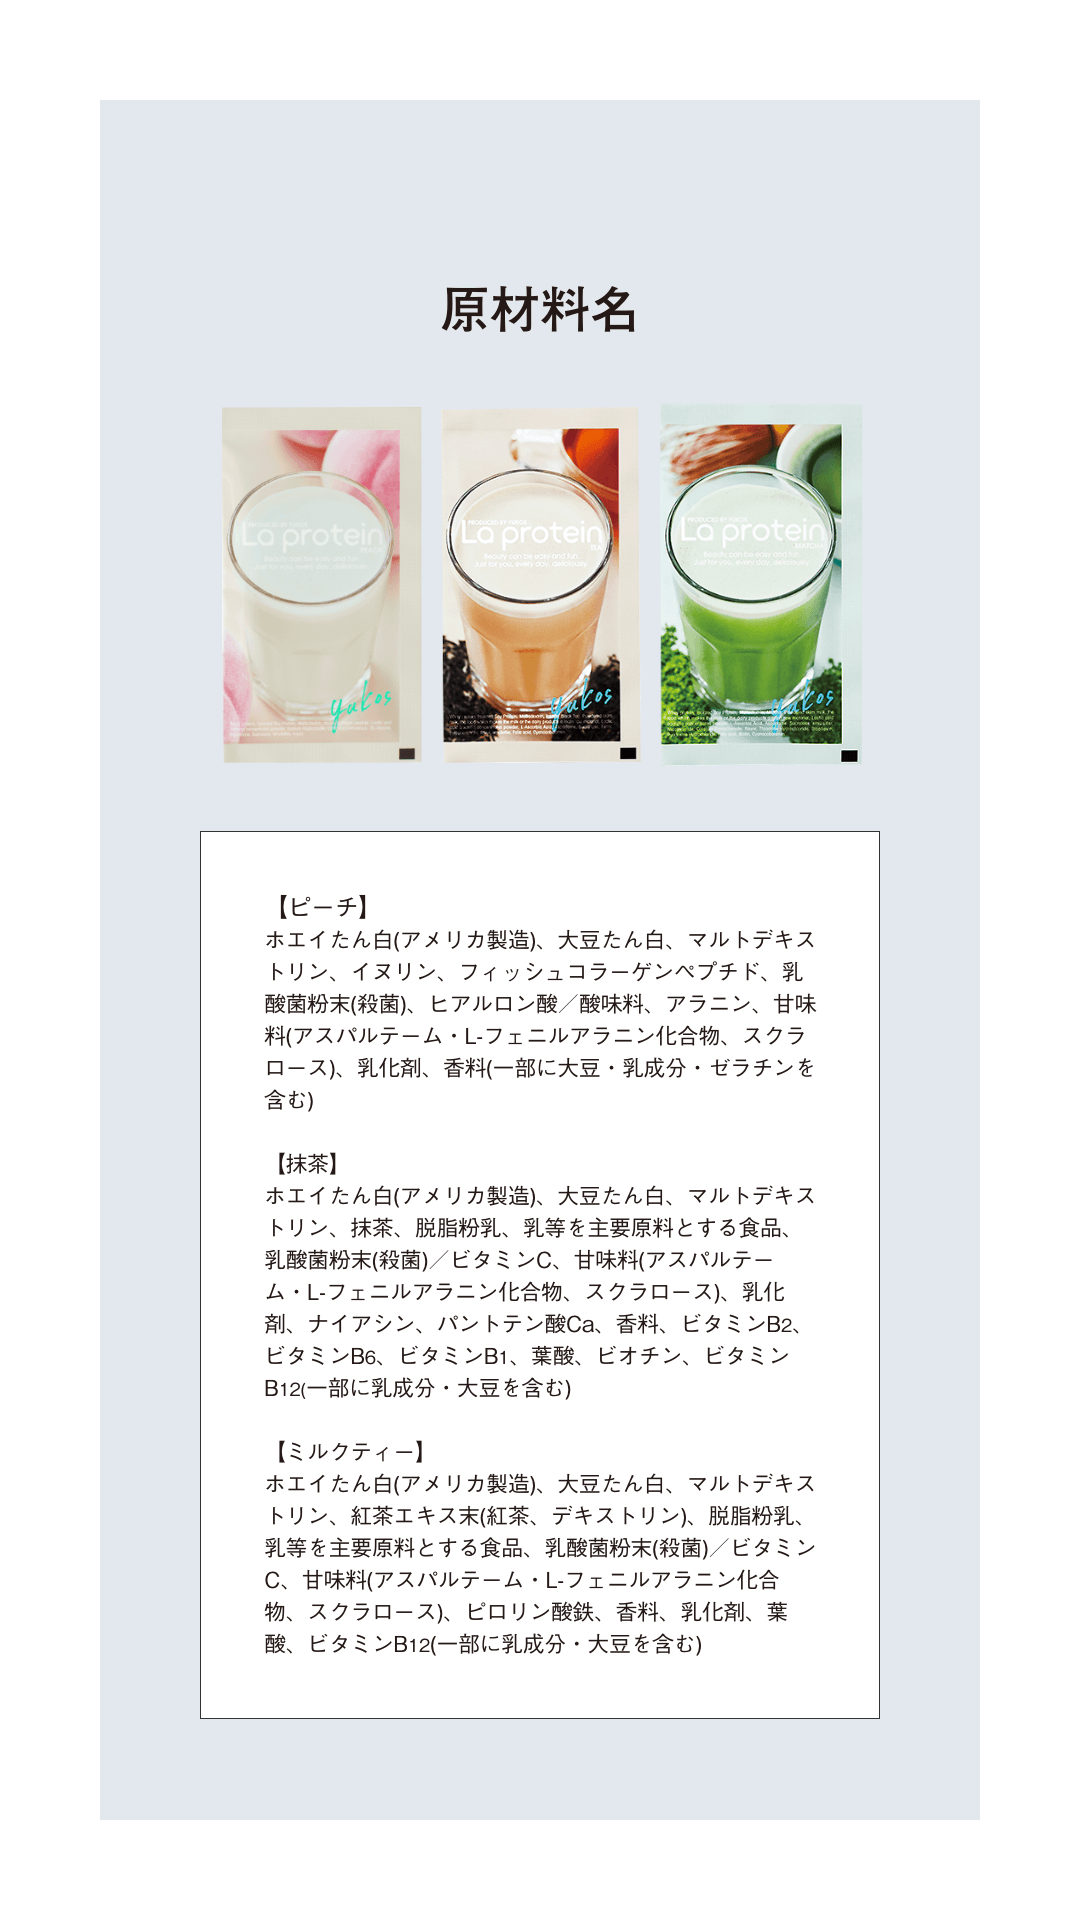 【定期コース】ラ プロテイン(La protein )ミルクティー味 10包入りBOX 定期